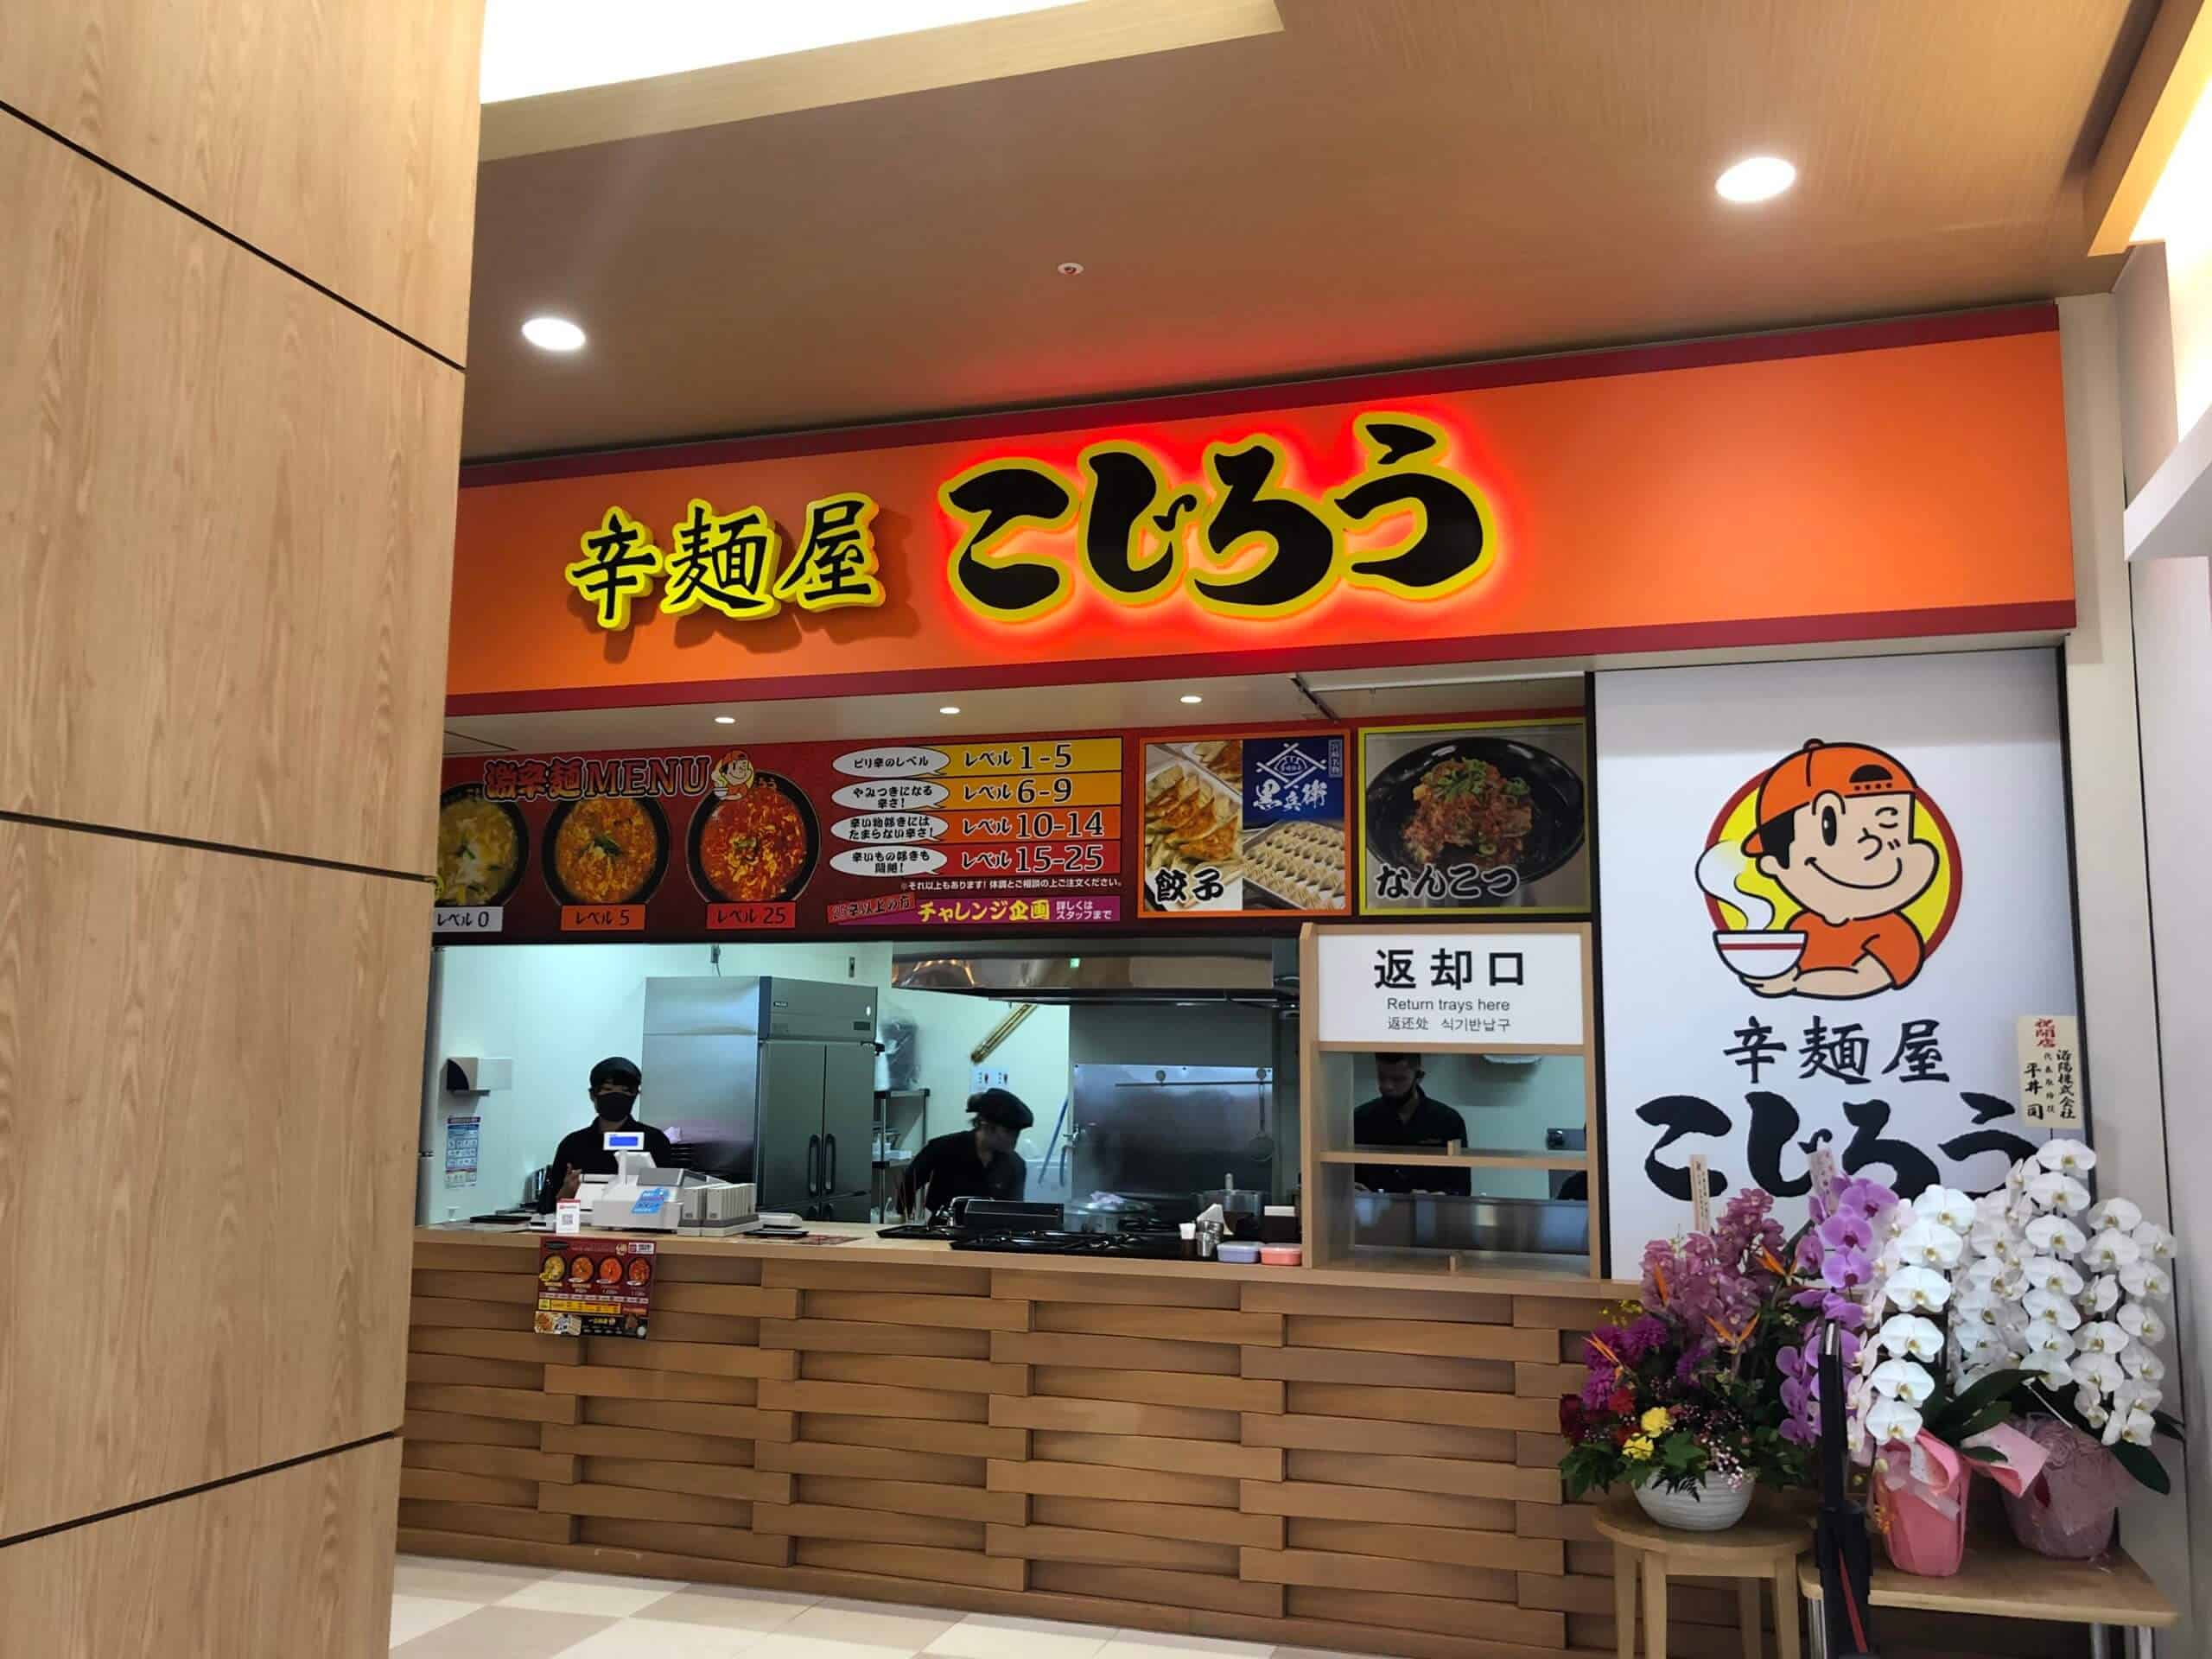 【オープン】姶良イオンに宮崎辛麺ブーム到来！？「辛麺屋 こじろう」さんの「25辛」を楽しんできた。